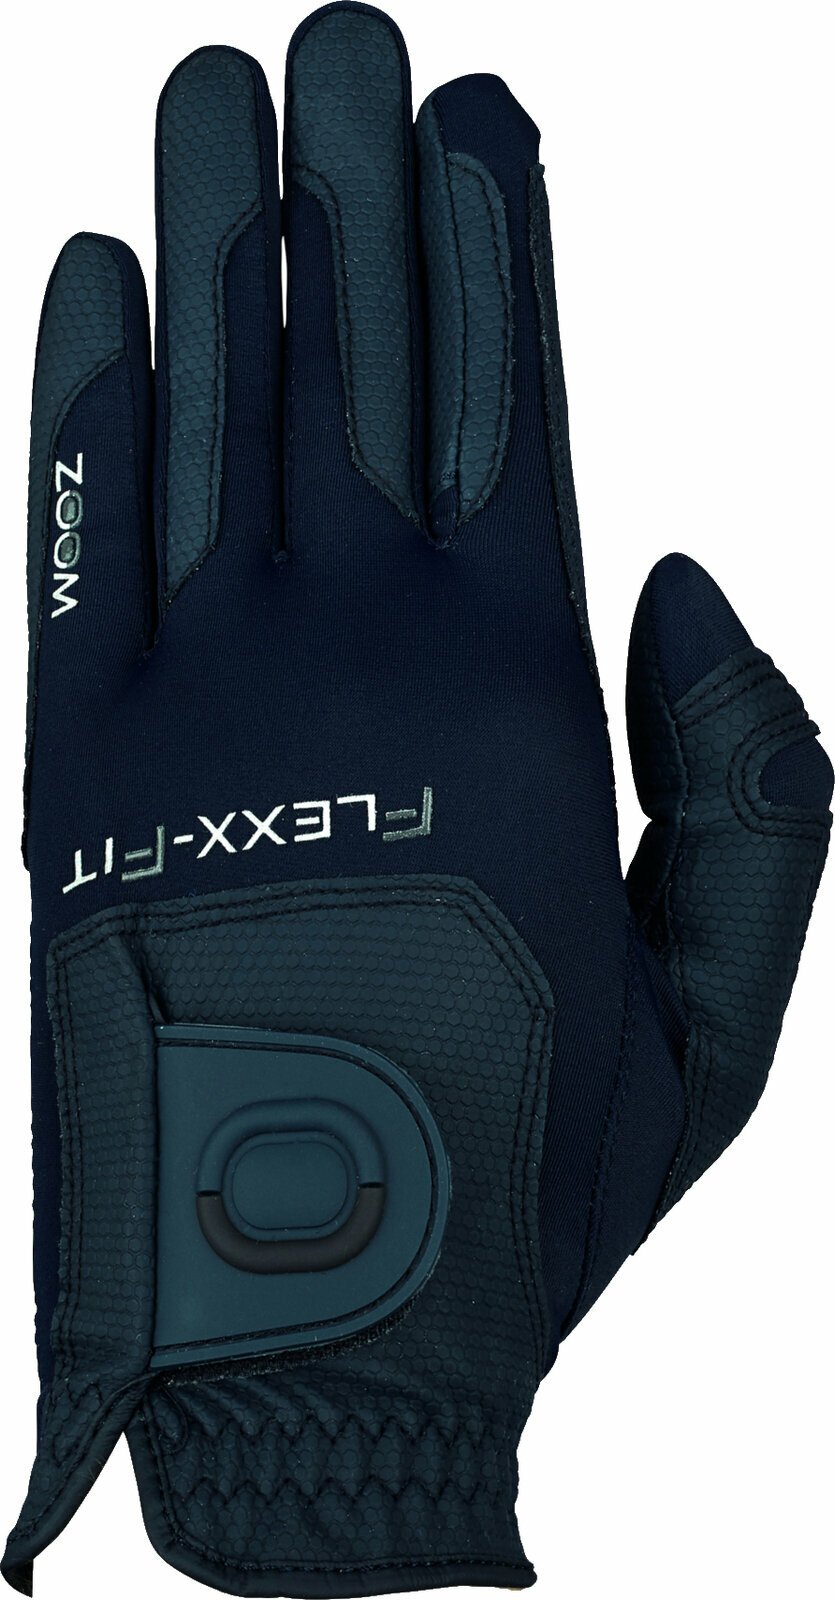 Rukavice Zoom Gloves Weather Style Junior Golf Glove Navy LH